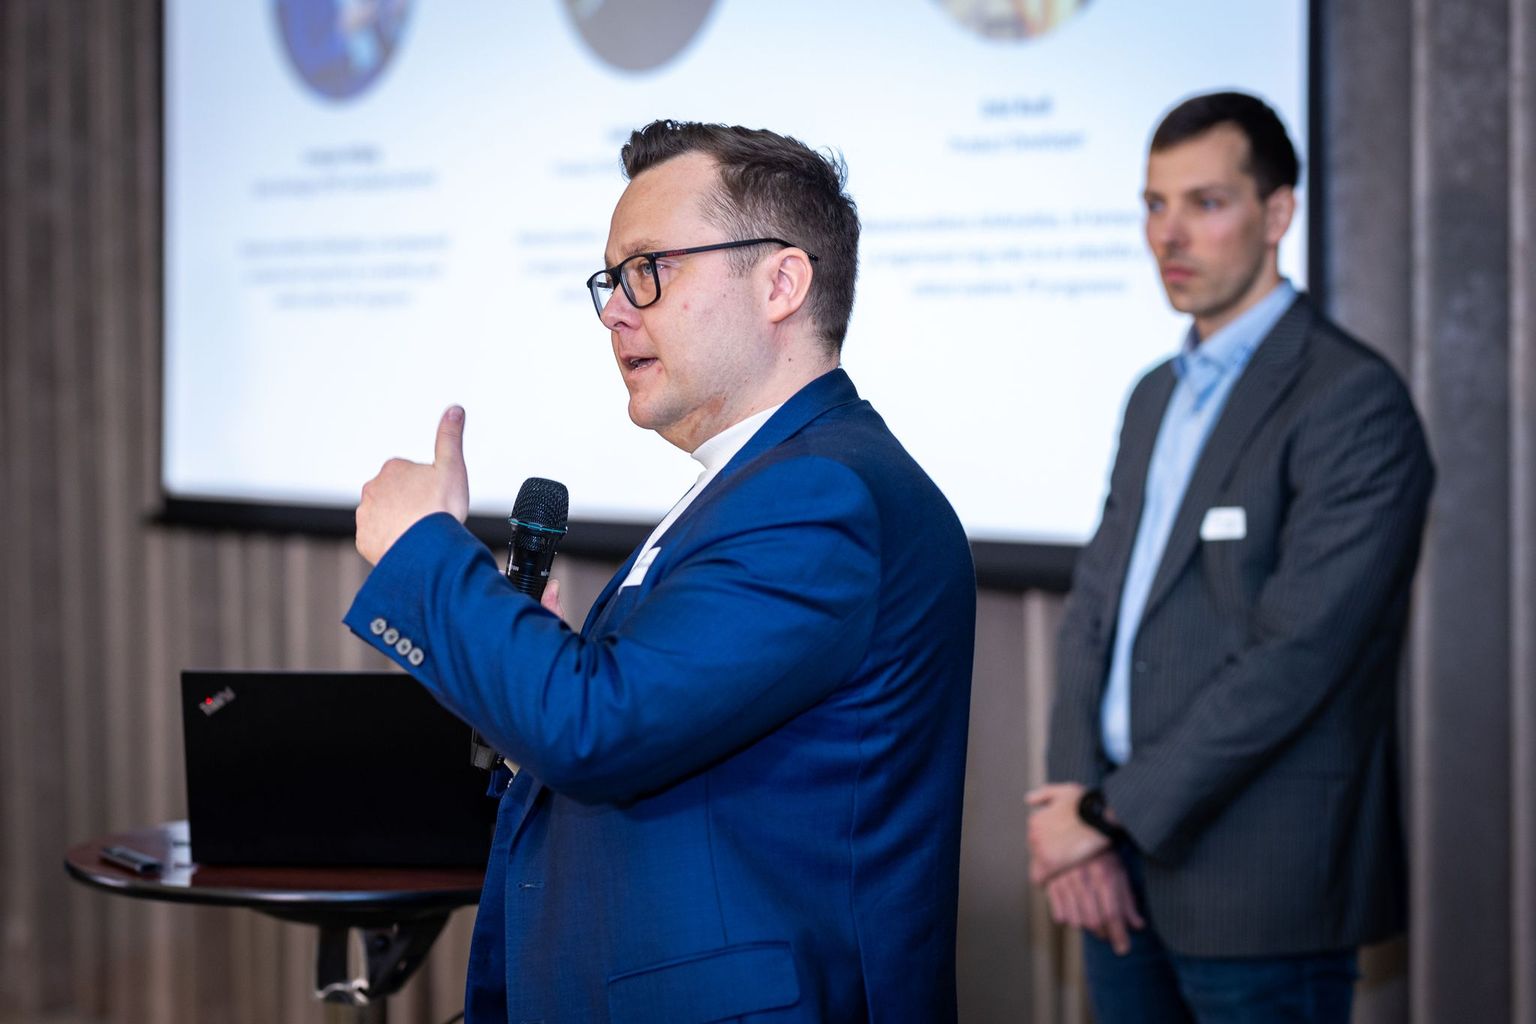 Tippinnovaatorite programmi esimese lennu õpilase Kristjan Kõljalaga koos osalevad koolitusel ka ettevõtte tootearendusjuht Valter Sard ja tootearendaja Erki Rudi.